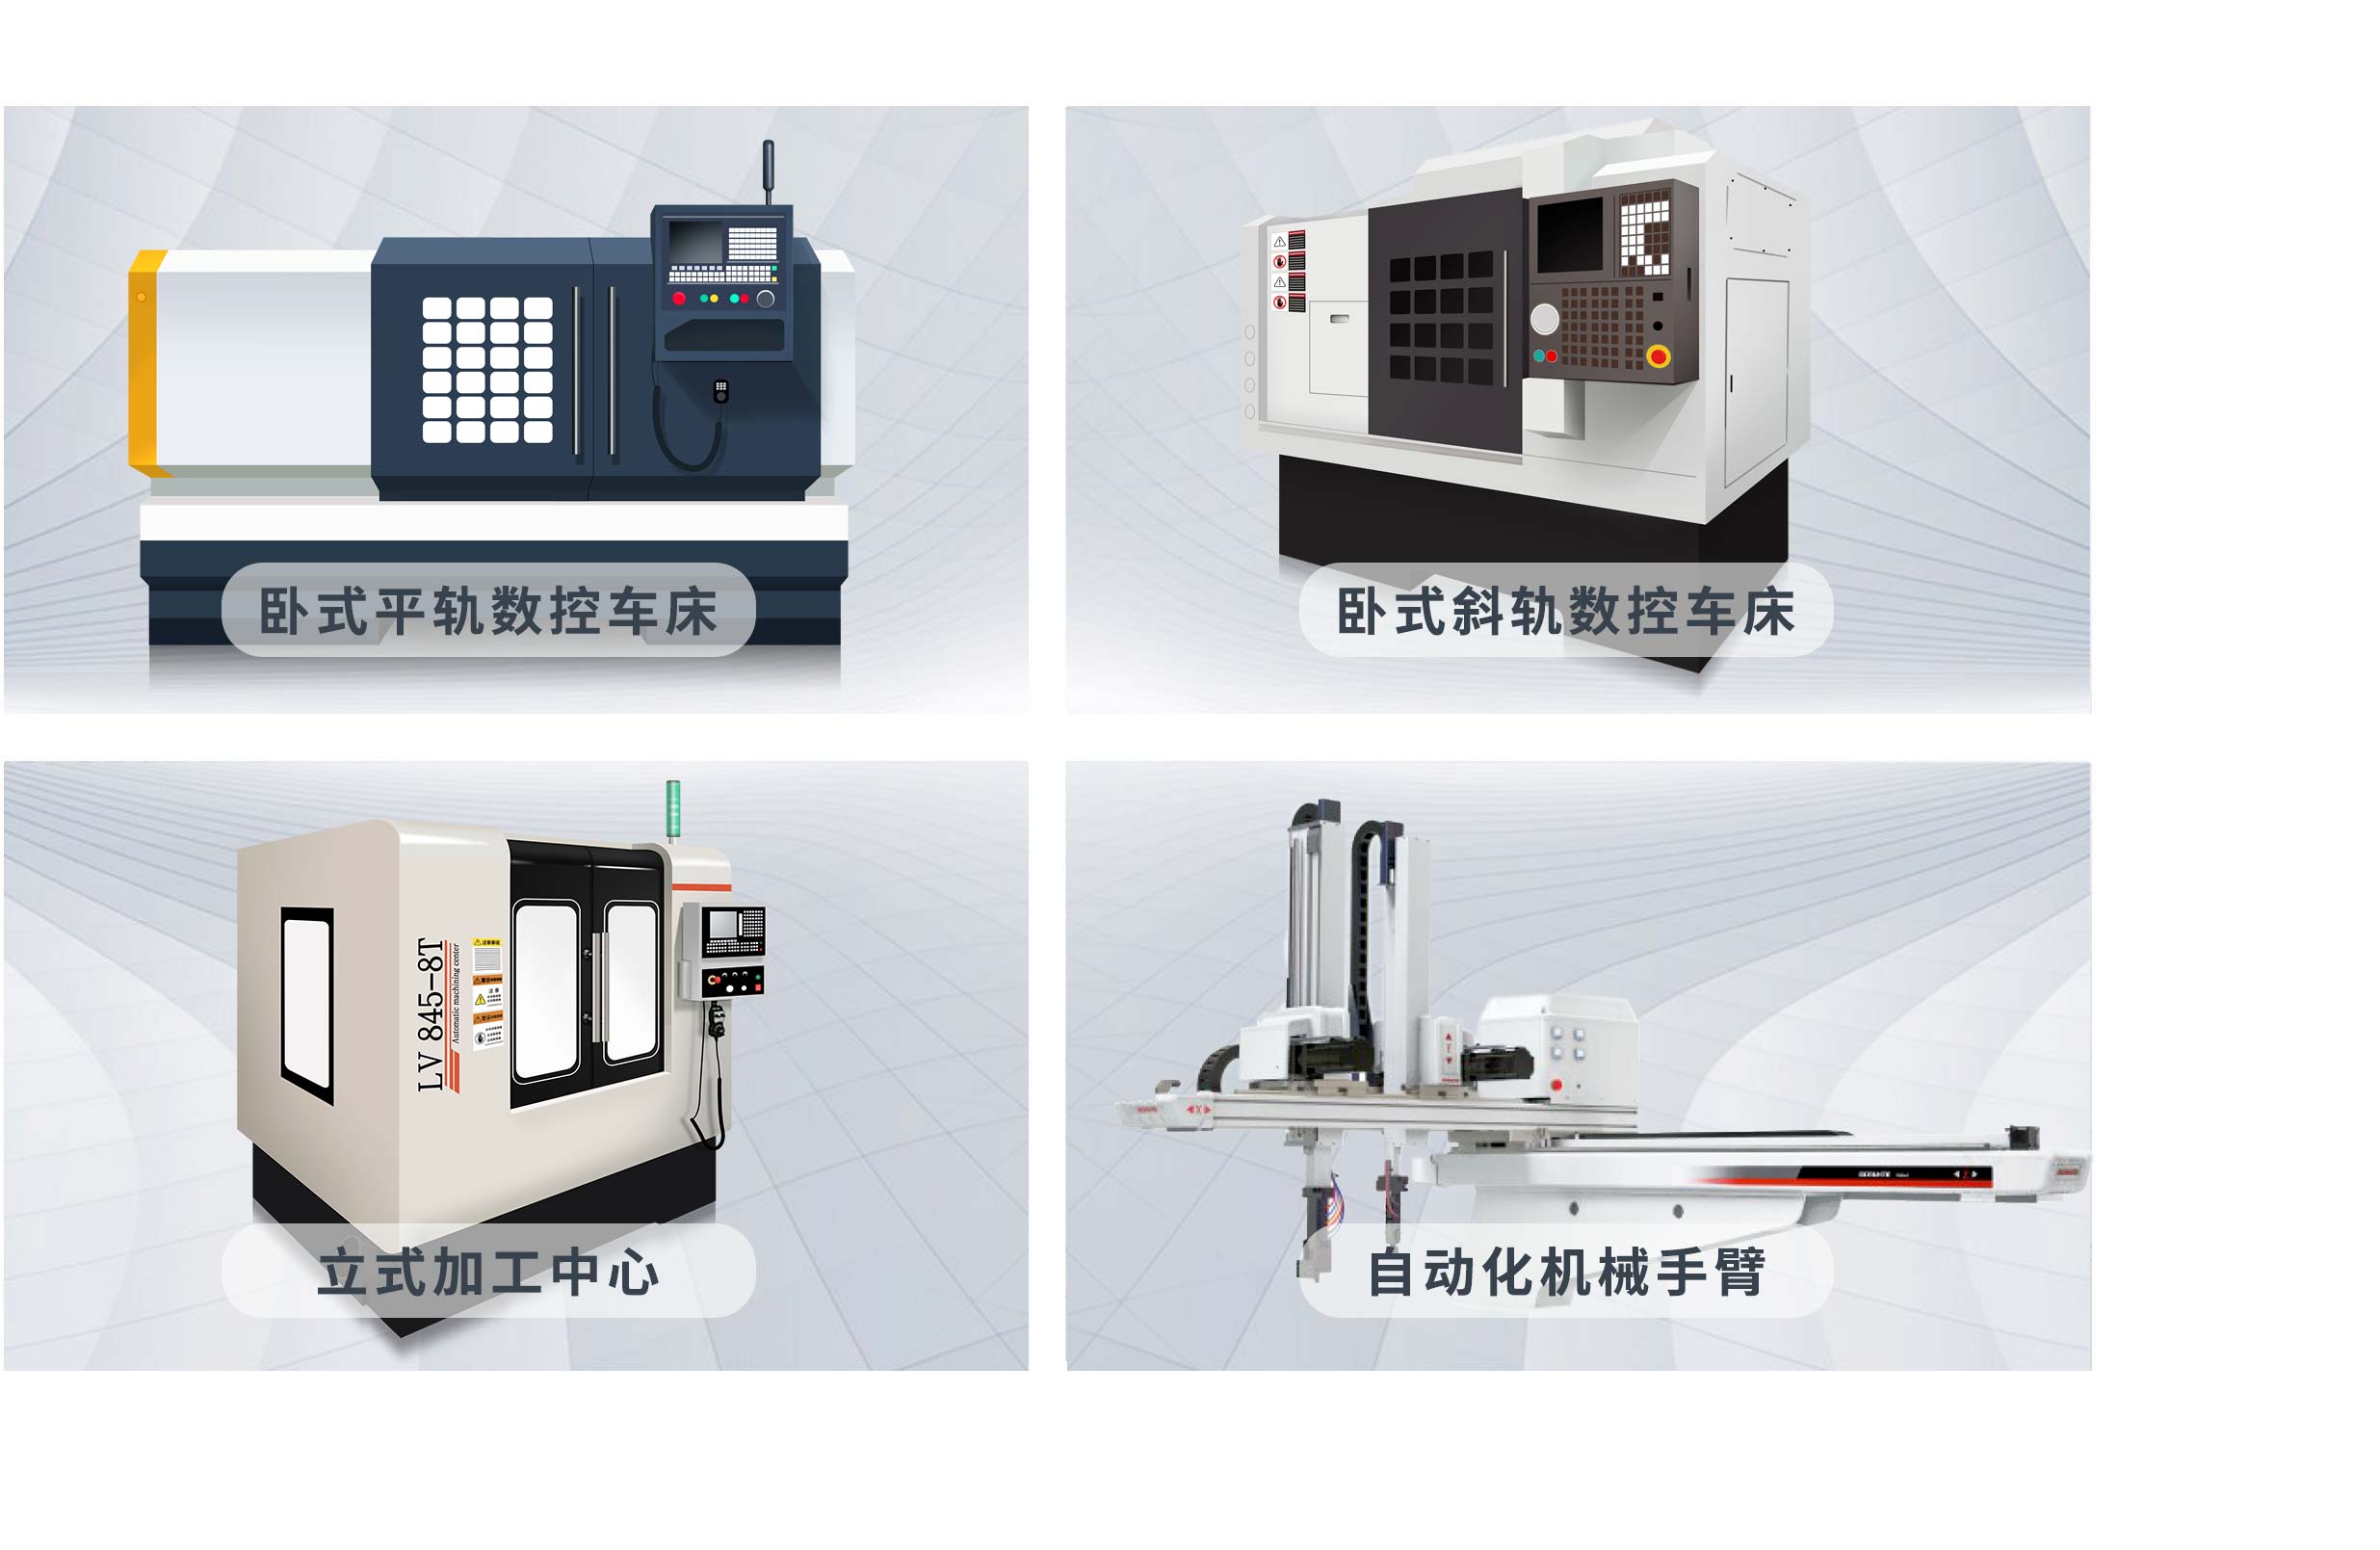 欧宝电竞数控车床机床和CNC加工中心的产品展示图